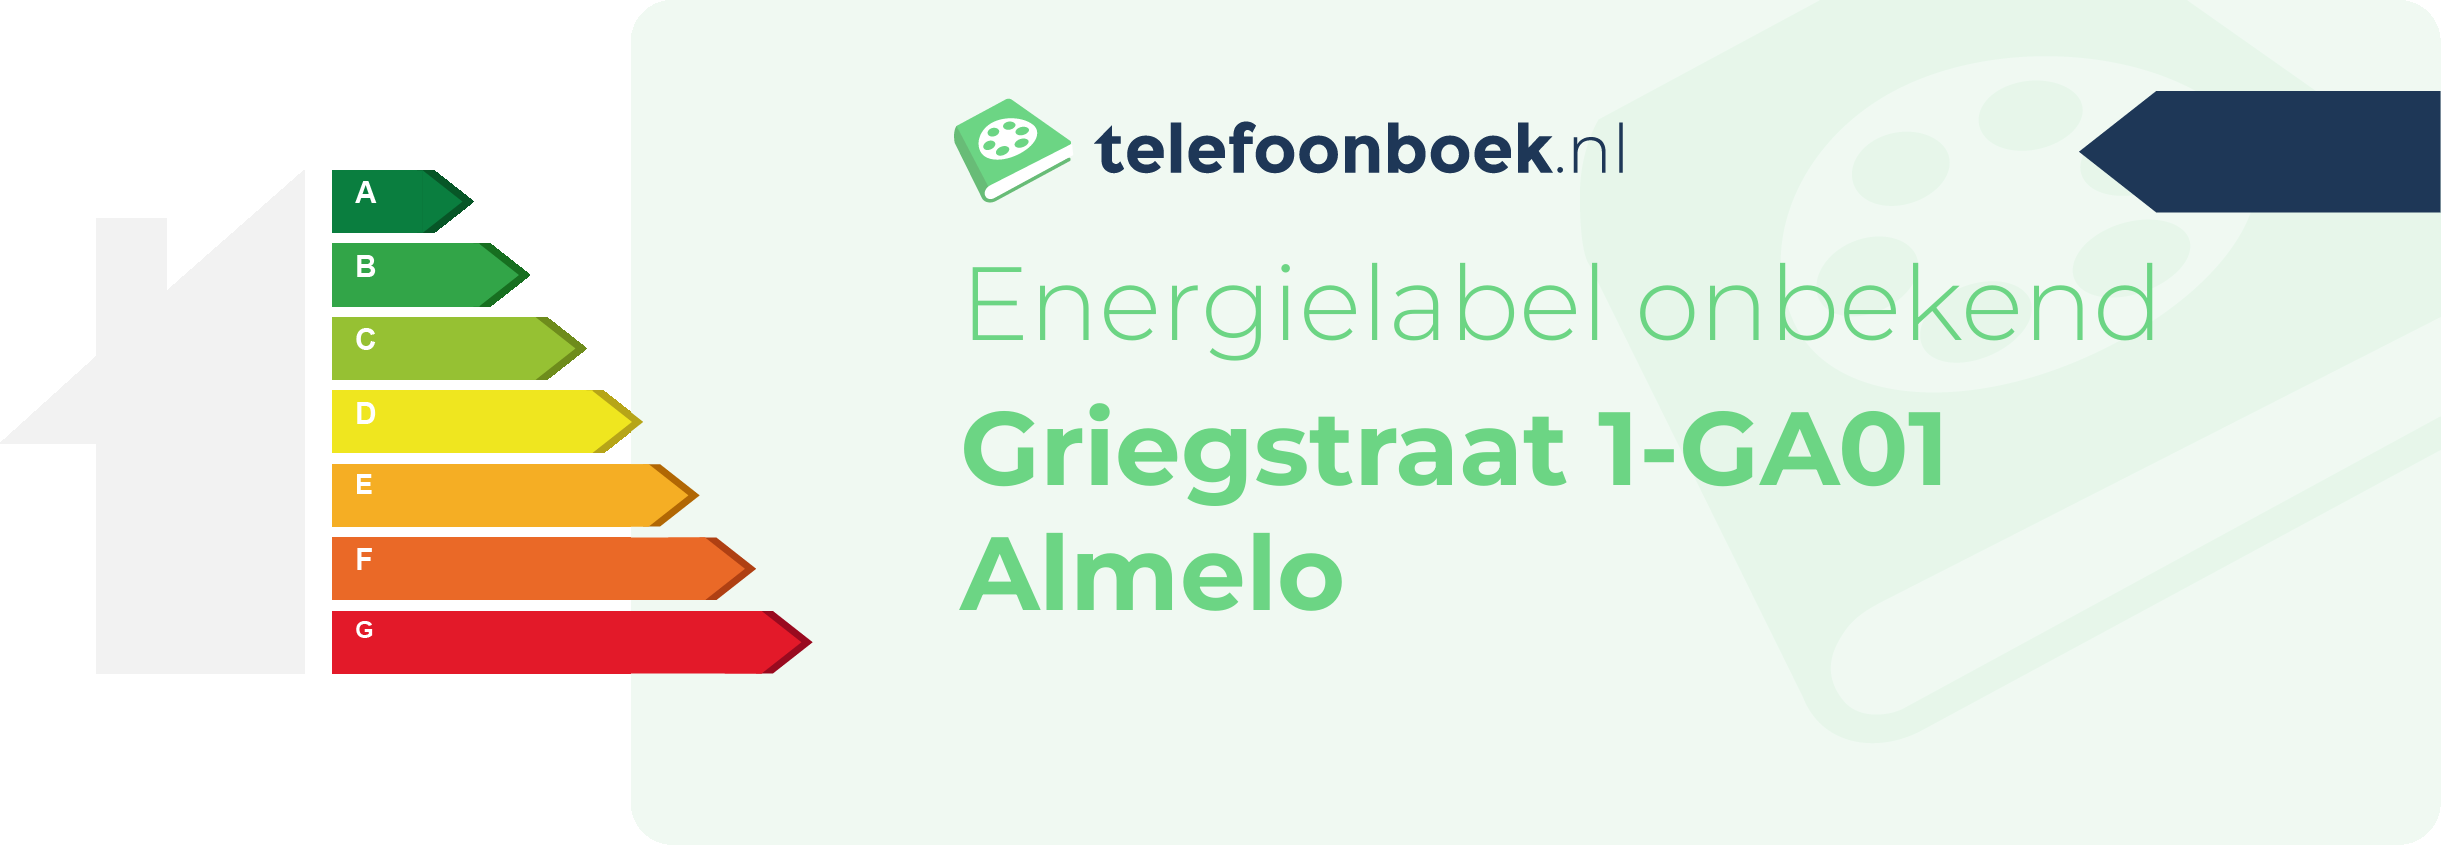 Energielabel Griegstraat 1-GA01 Almelo